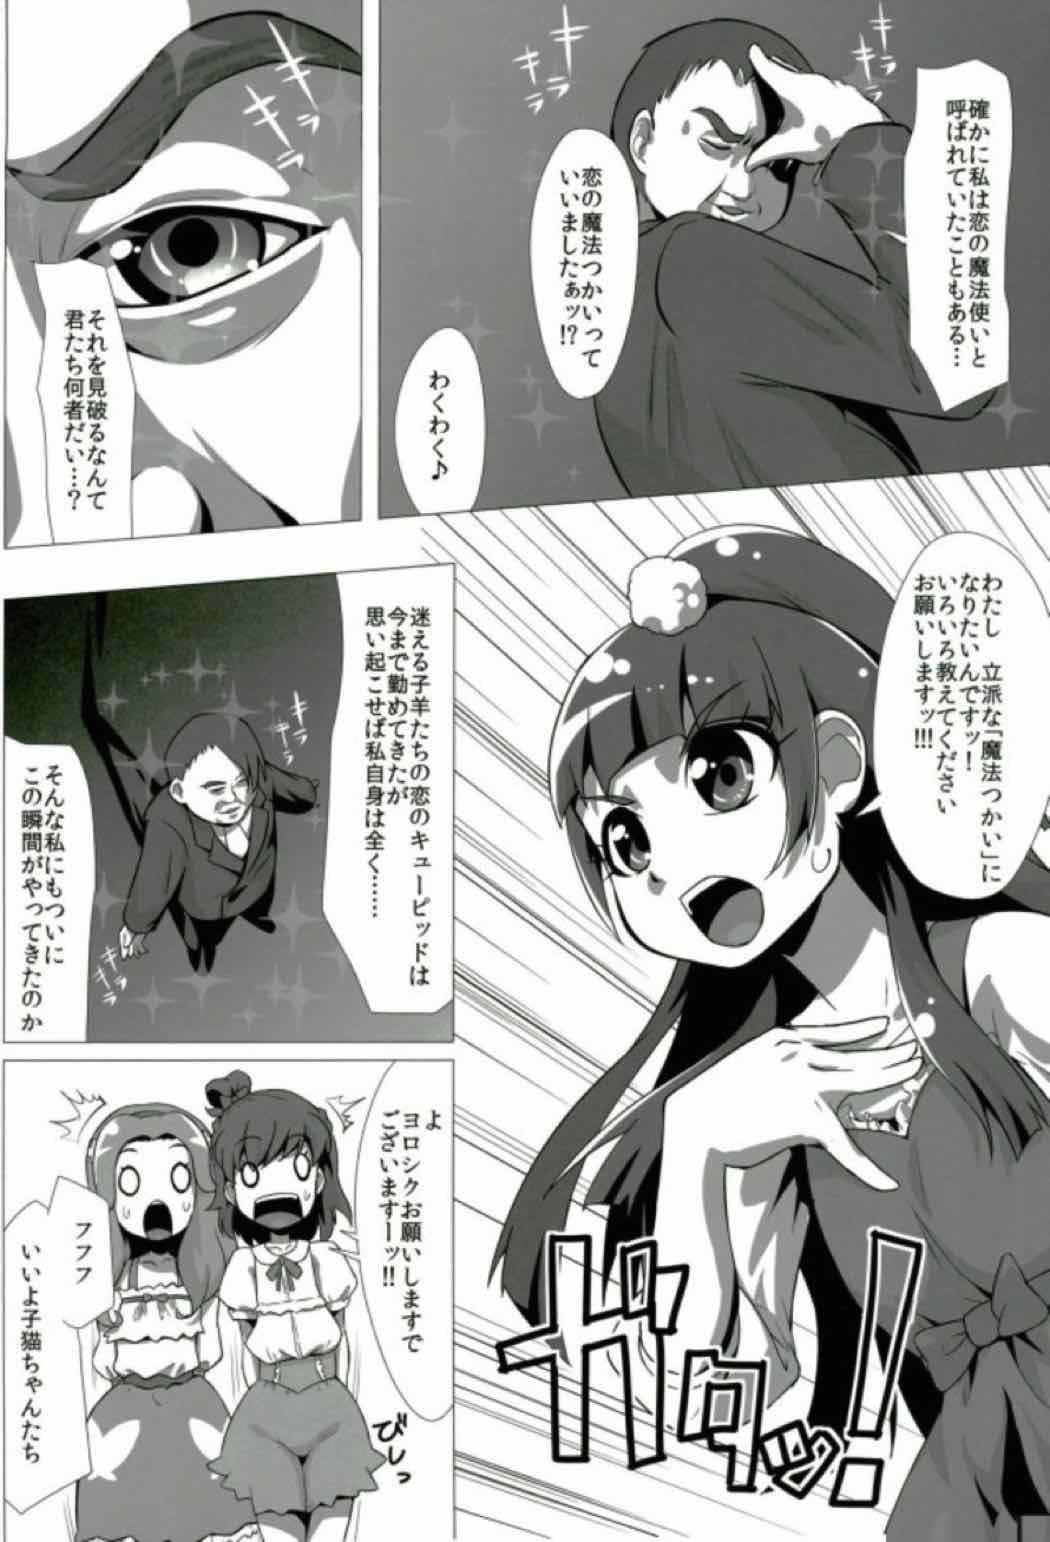 Rough Fucking Nashimahoukai no Mahou Tsukai - Puella magi madoka magica Maho girls precure Weird - Page 5